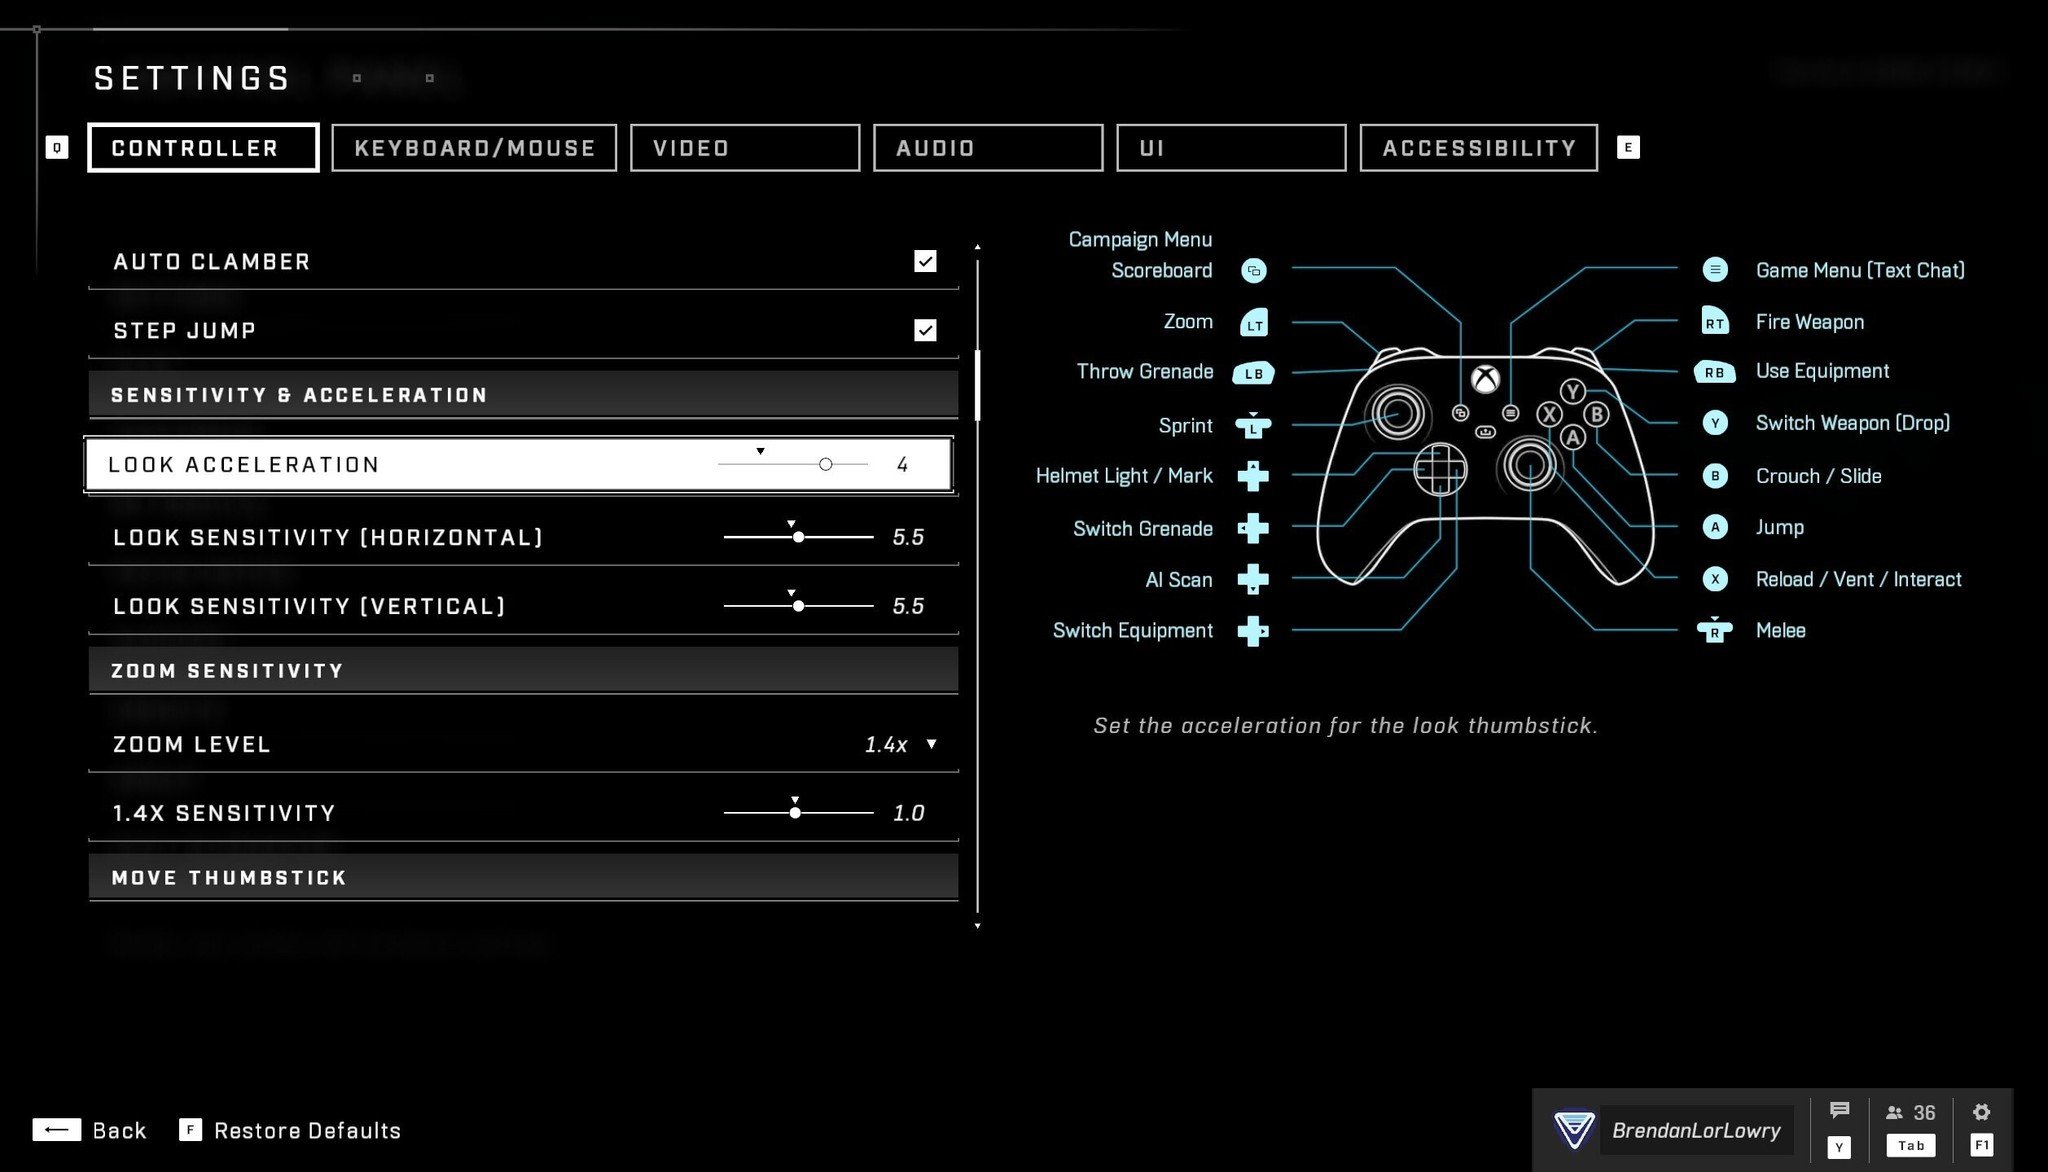 Configurações do controlador Halo Infinite